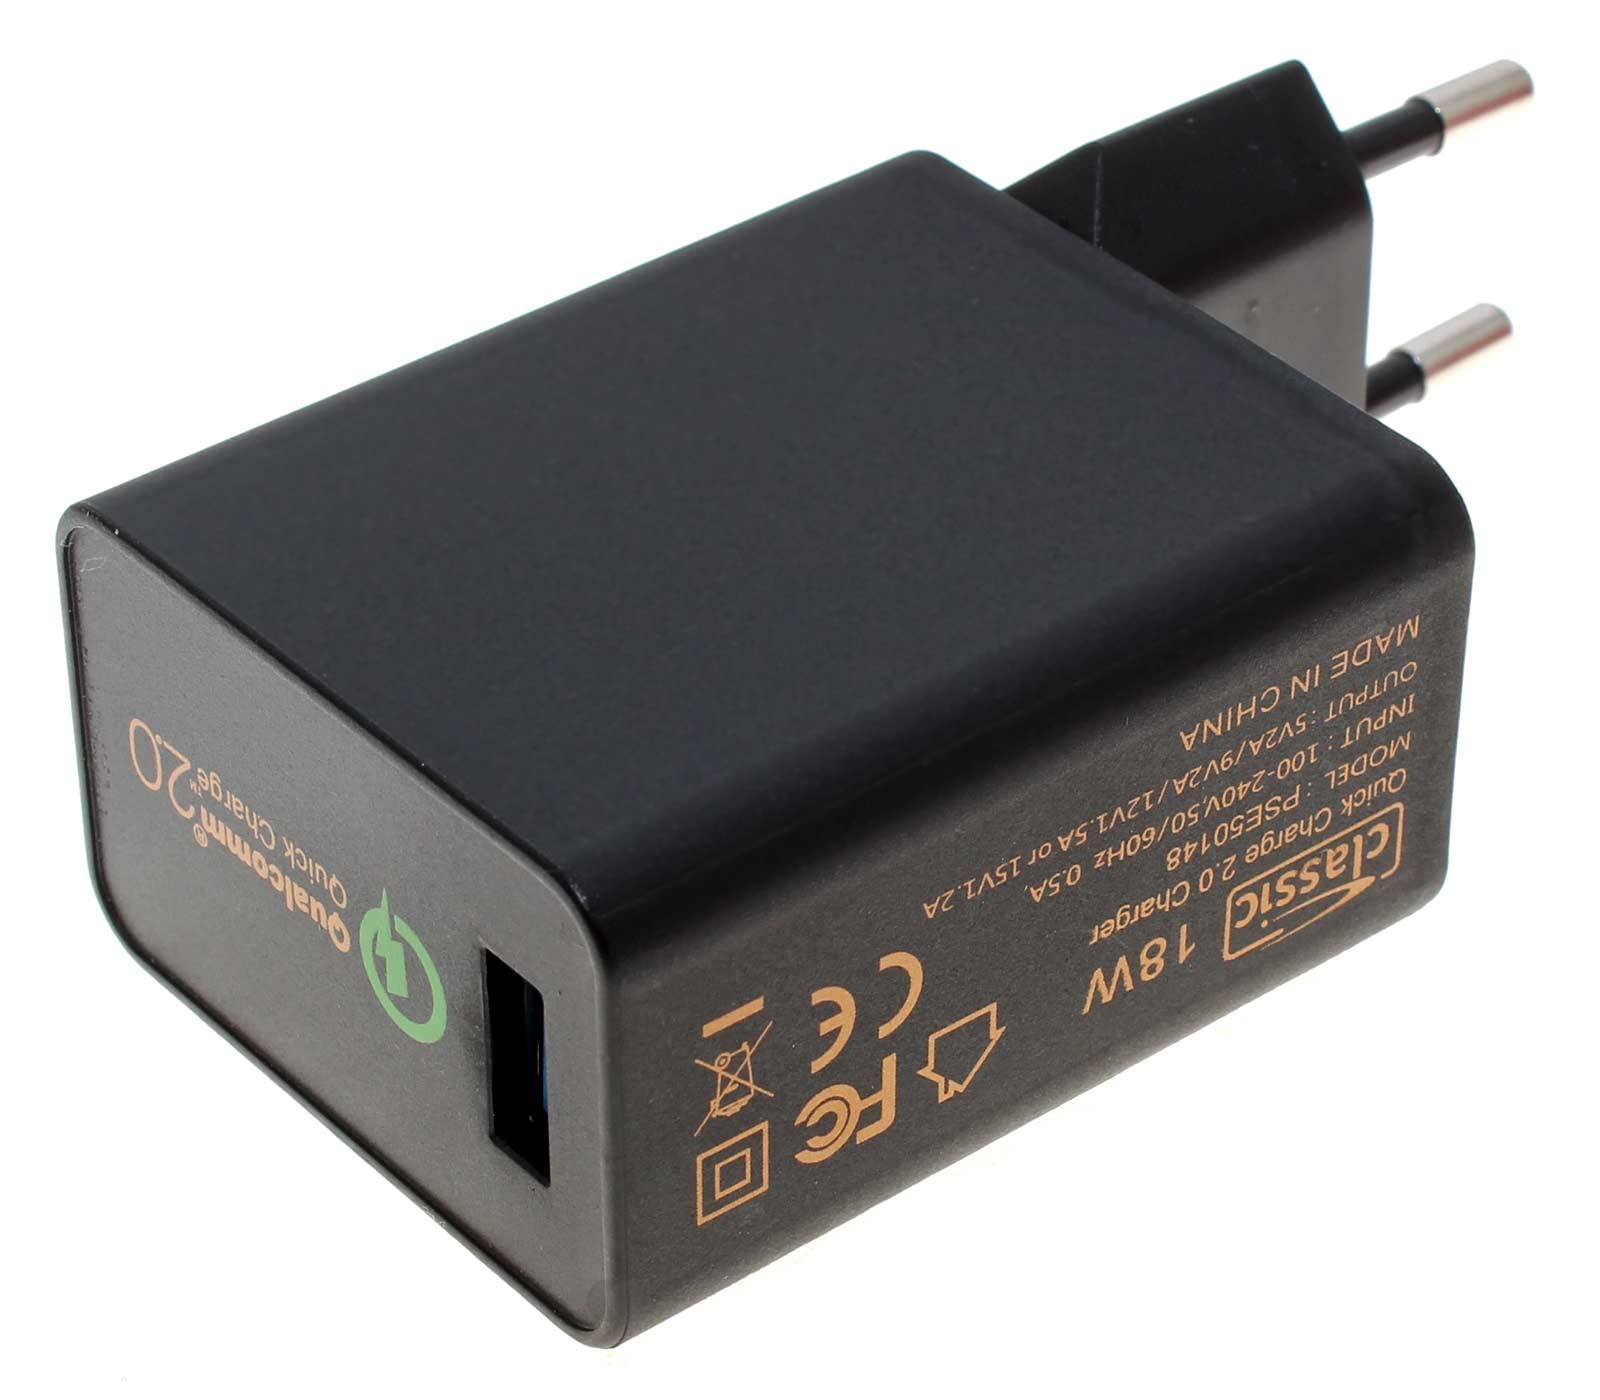 USB Stecker-Netzteil Schnell-Ladegerät, 5-15V 2A 18W, PSE50148 EU, Qualcomm